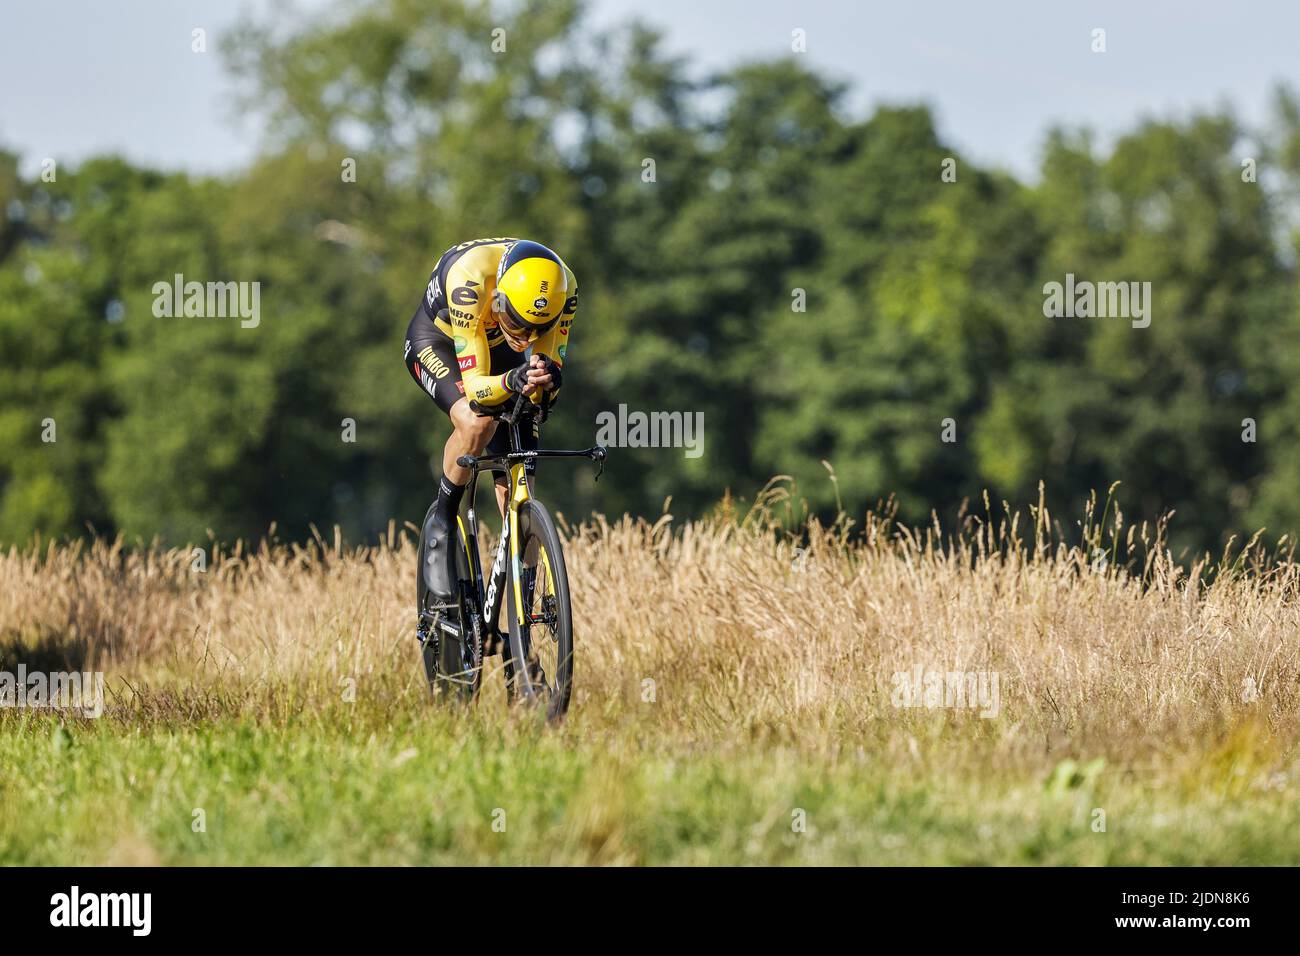 EMMEN - ciclista Tom Dumoulin durante i Campionati nazionali olandesi di prova del tempo a Drenthe. ANP BAS CZERWINSKIA Foto Stock